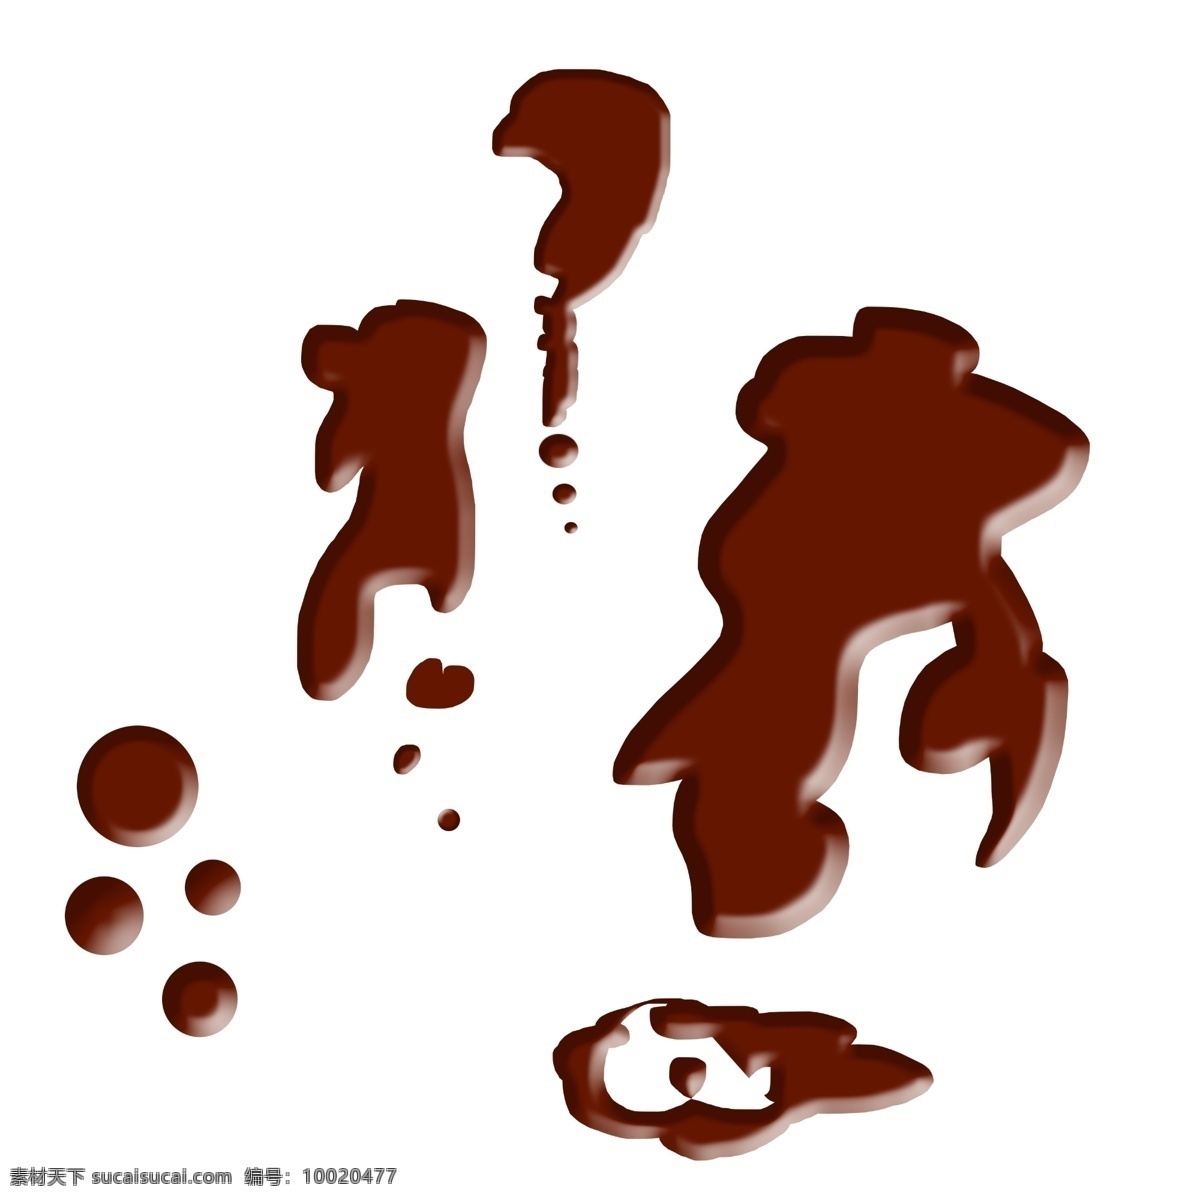 巧克力 曲奇 饼干 巧克力素材 曲奇素材 棕色巧克力 巧克力元素 饼干元素 圆滑素材 滑滑的